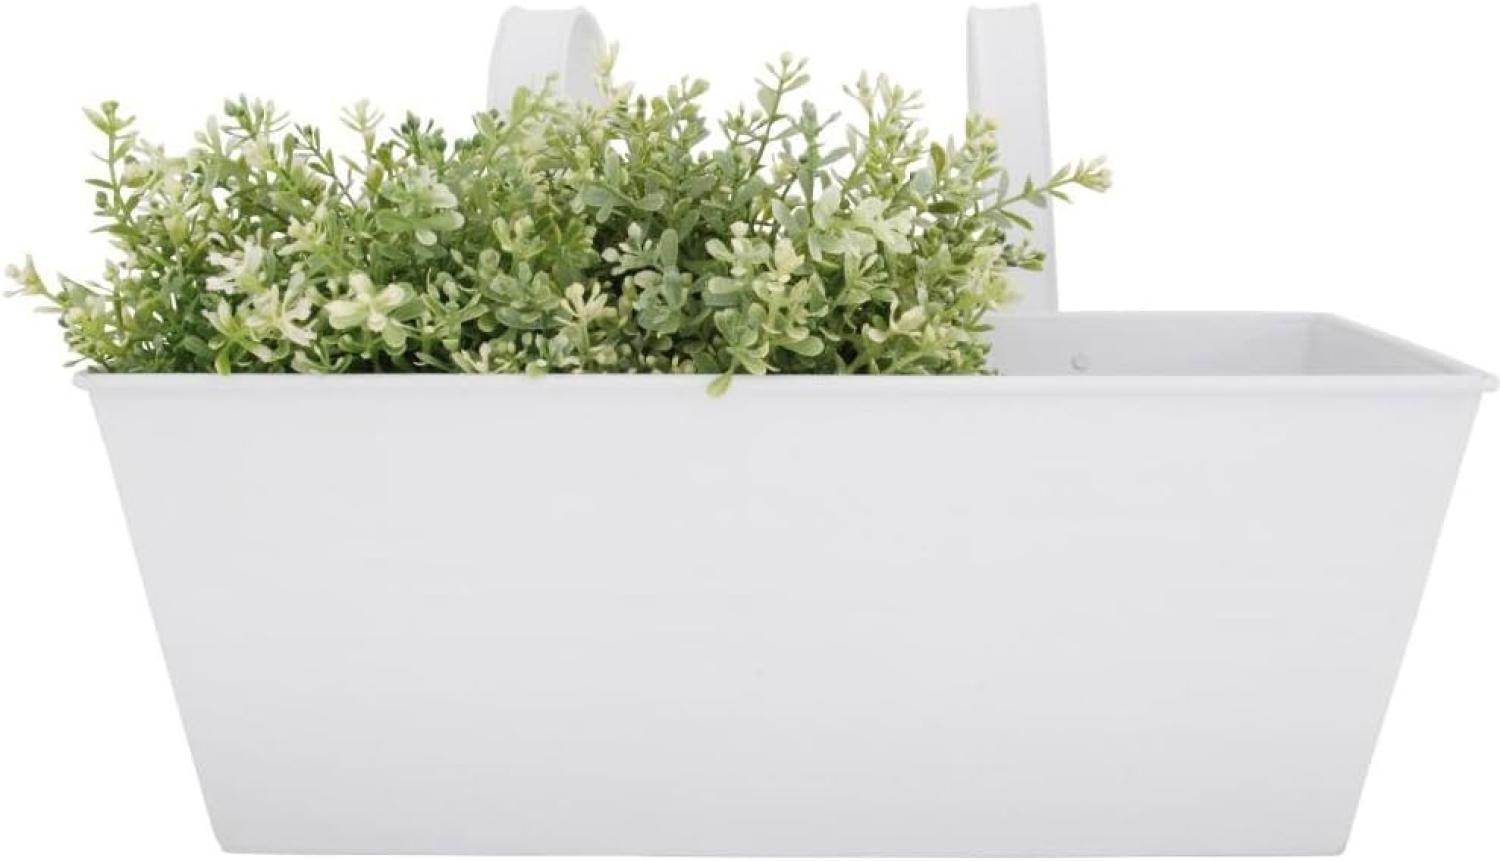 Esschert Design Balkonkasten, Blumenkasten mit Haken in weiß, 7,5 Liter, ca. 40 cm x 27 cm x 23 cm Bild 1